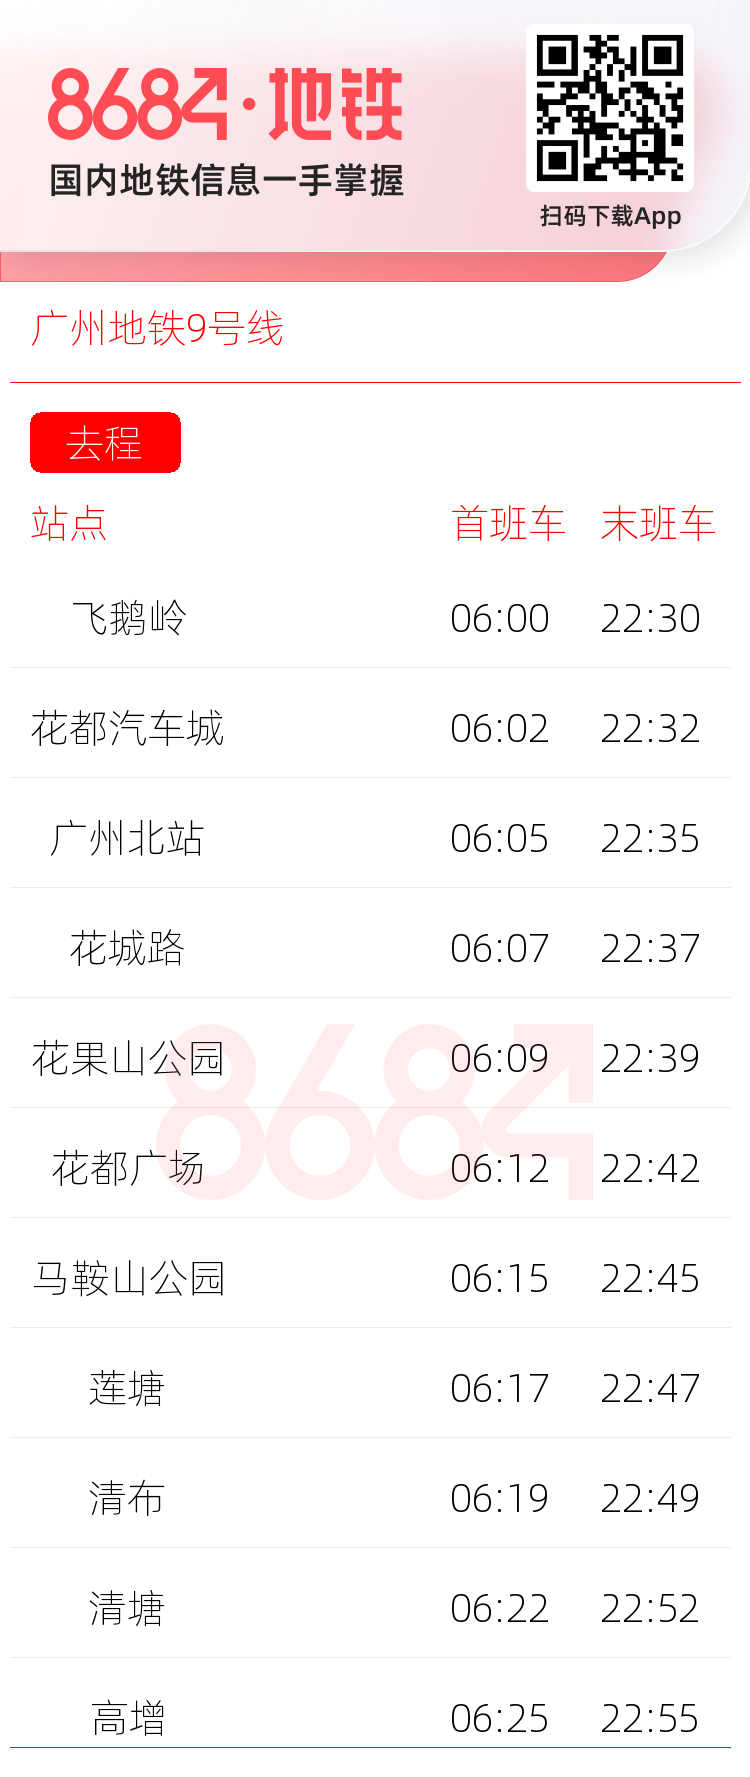 广州地铁9号线运营时间表